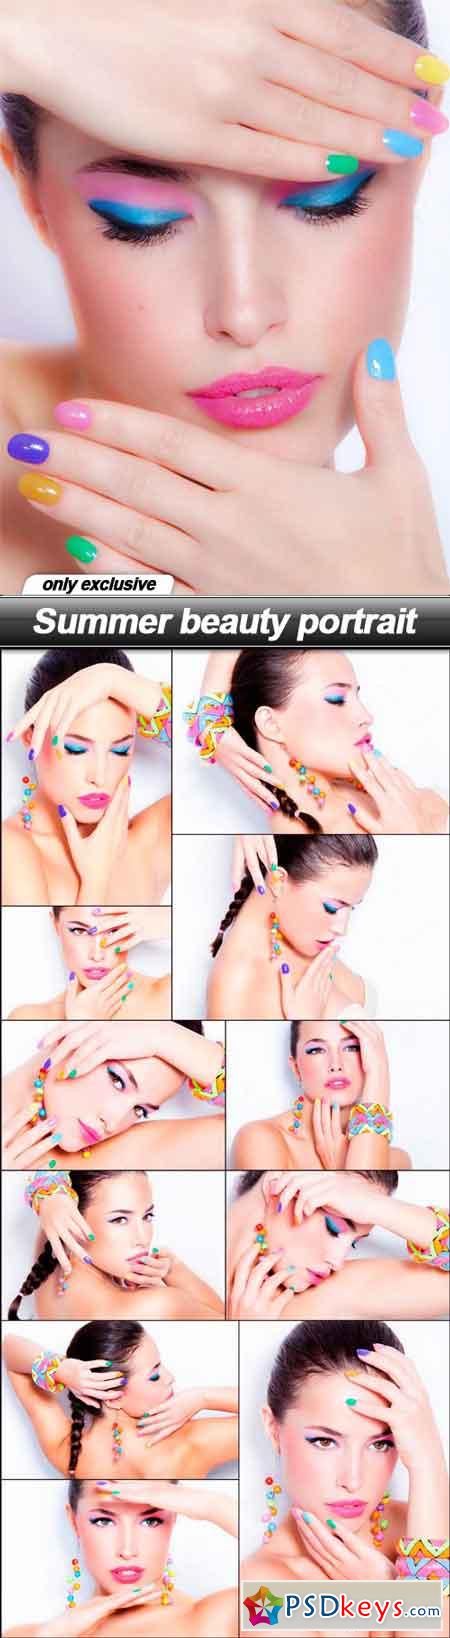 Summer beauty portrait - 12 UHQ JPEG